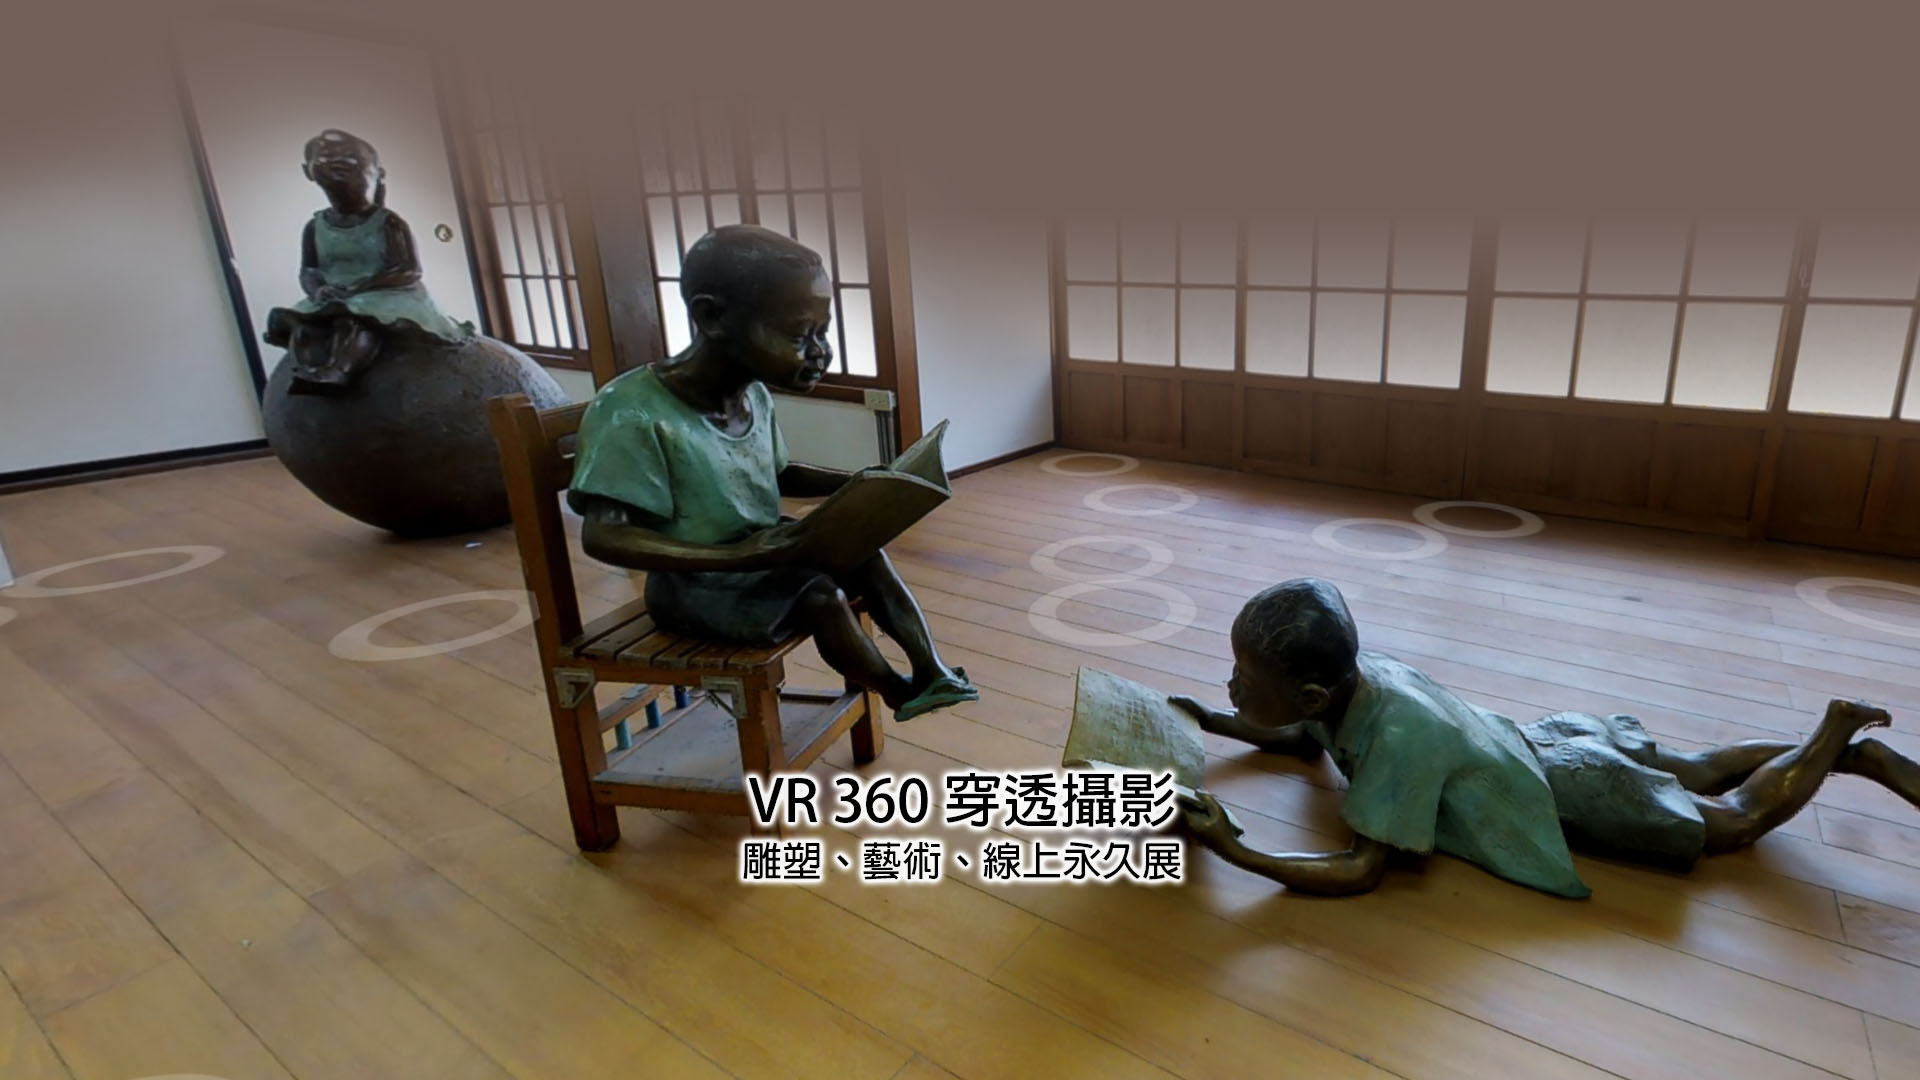 余燈銓雕塑展VR360